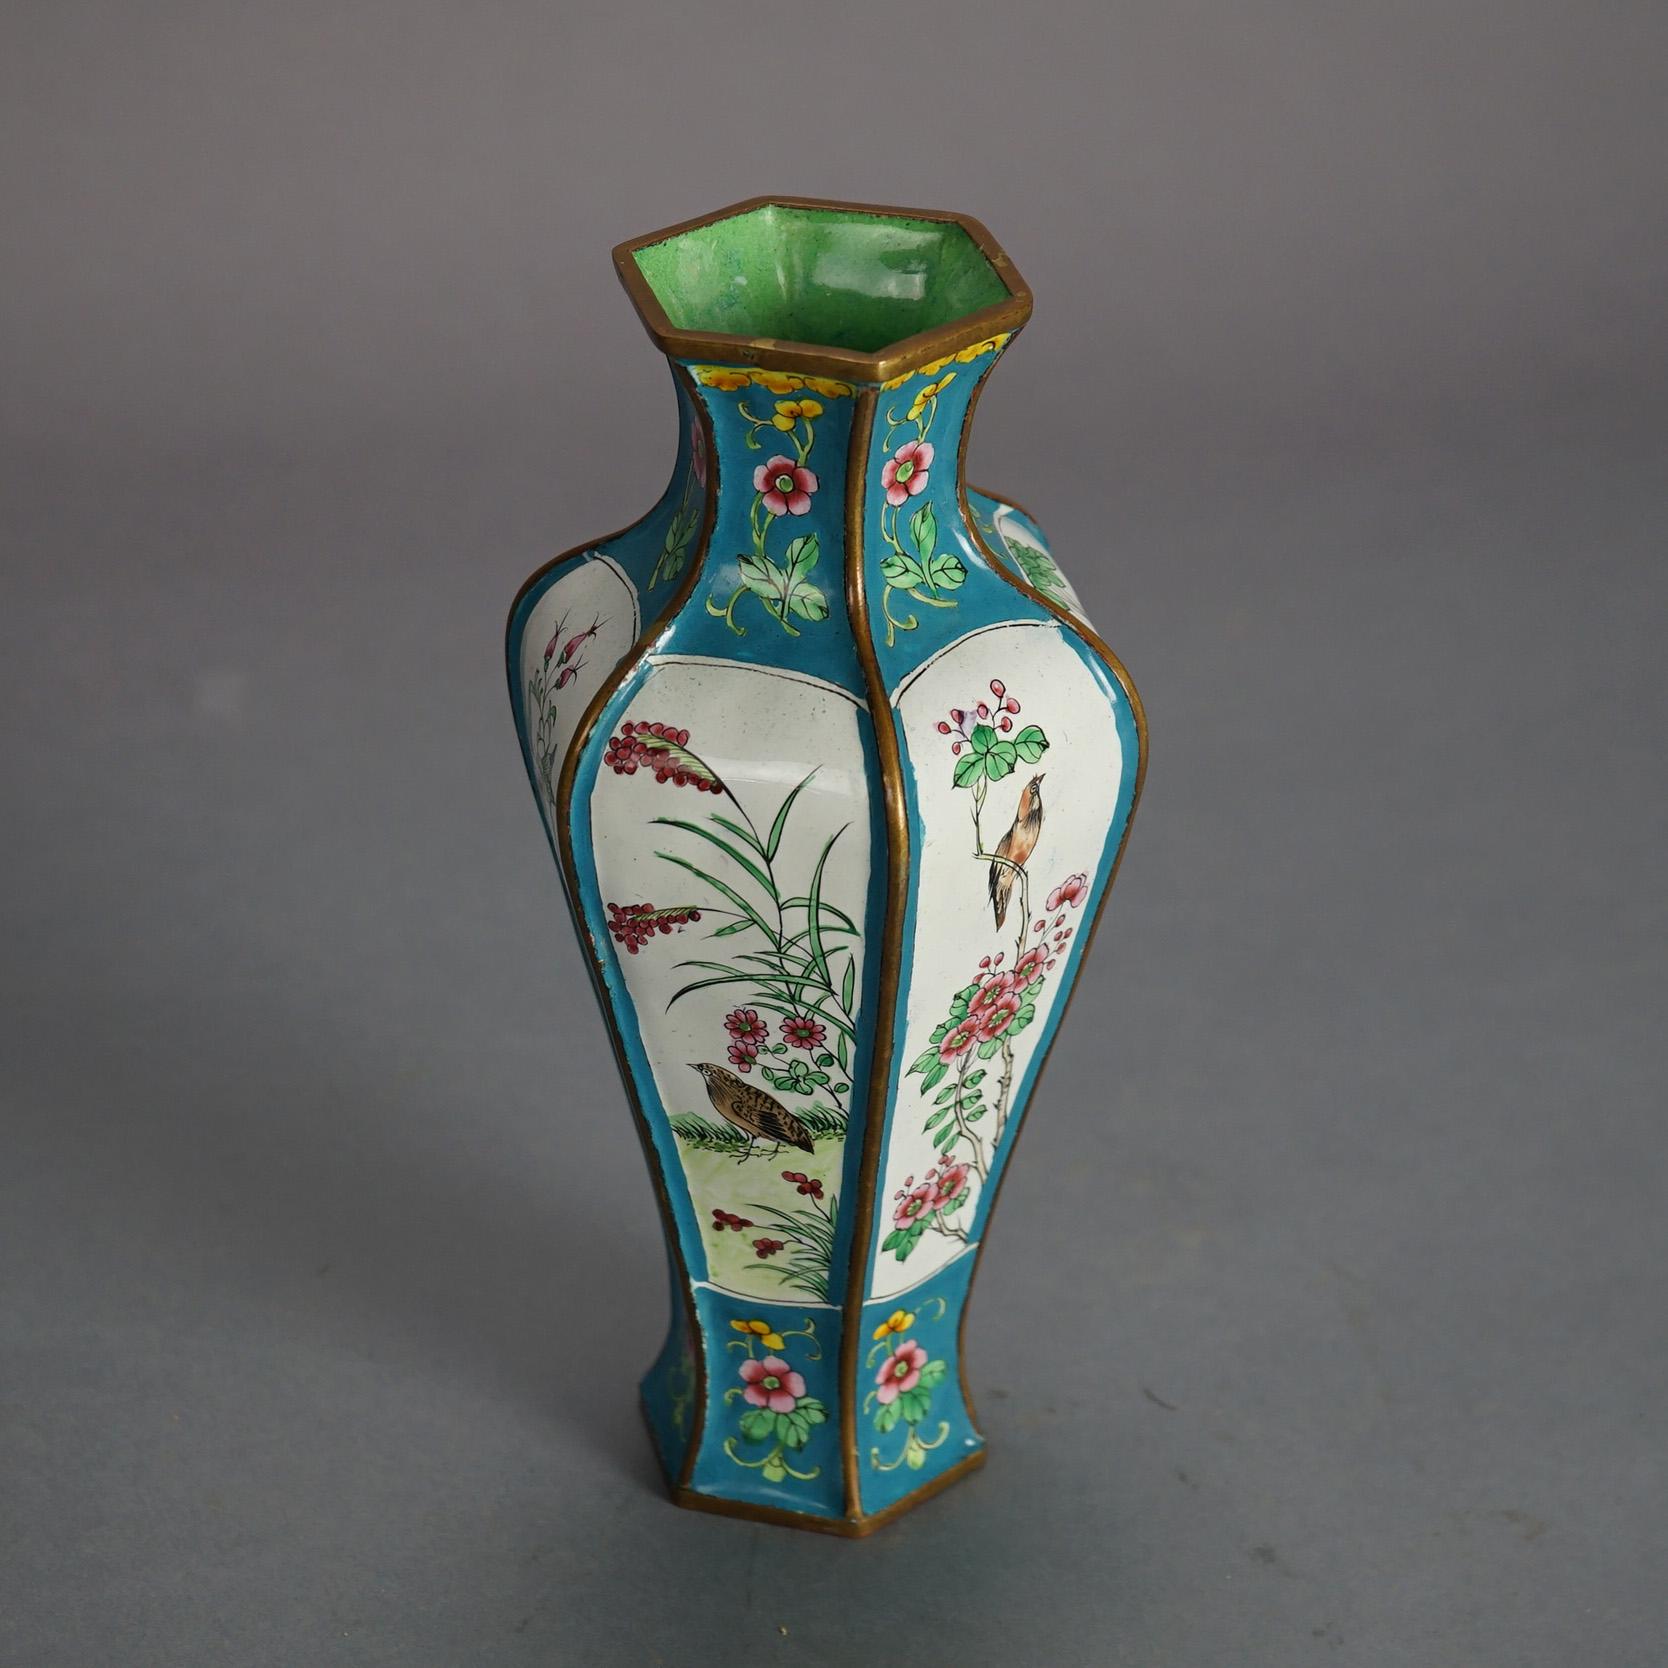 Chinesische emaillierte und polychromierte Gartenszene-Vase mit Vögeln, 20. Jahrhundert

Maße - 9 